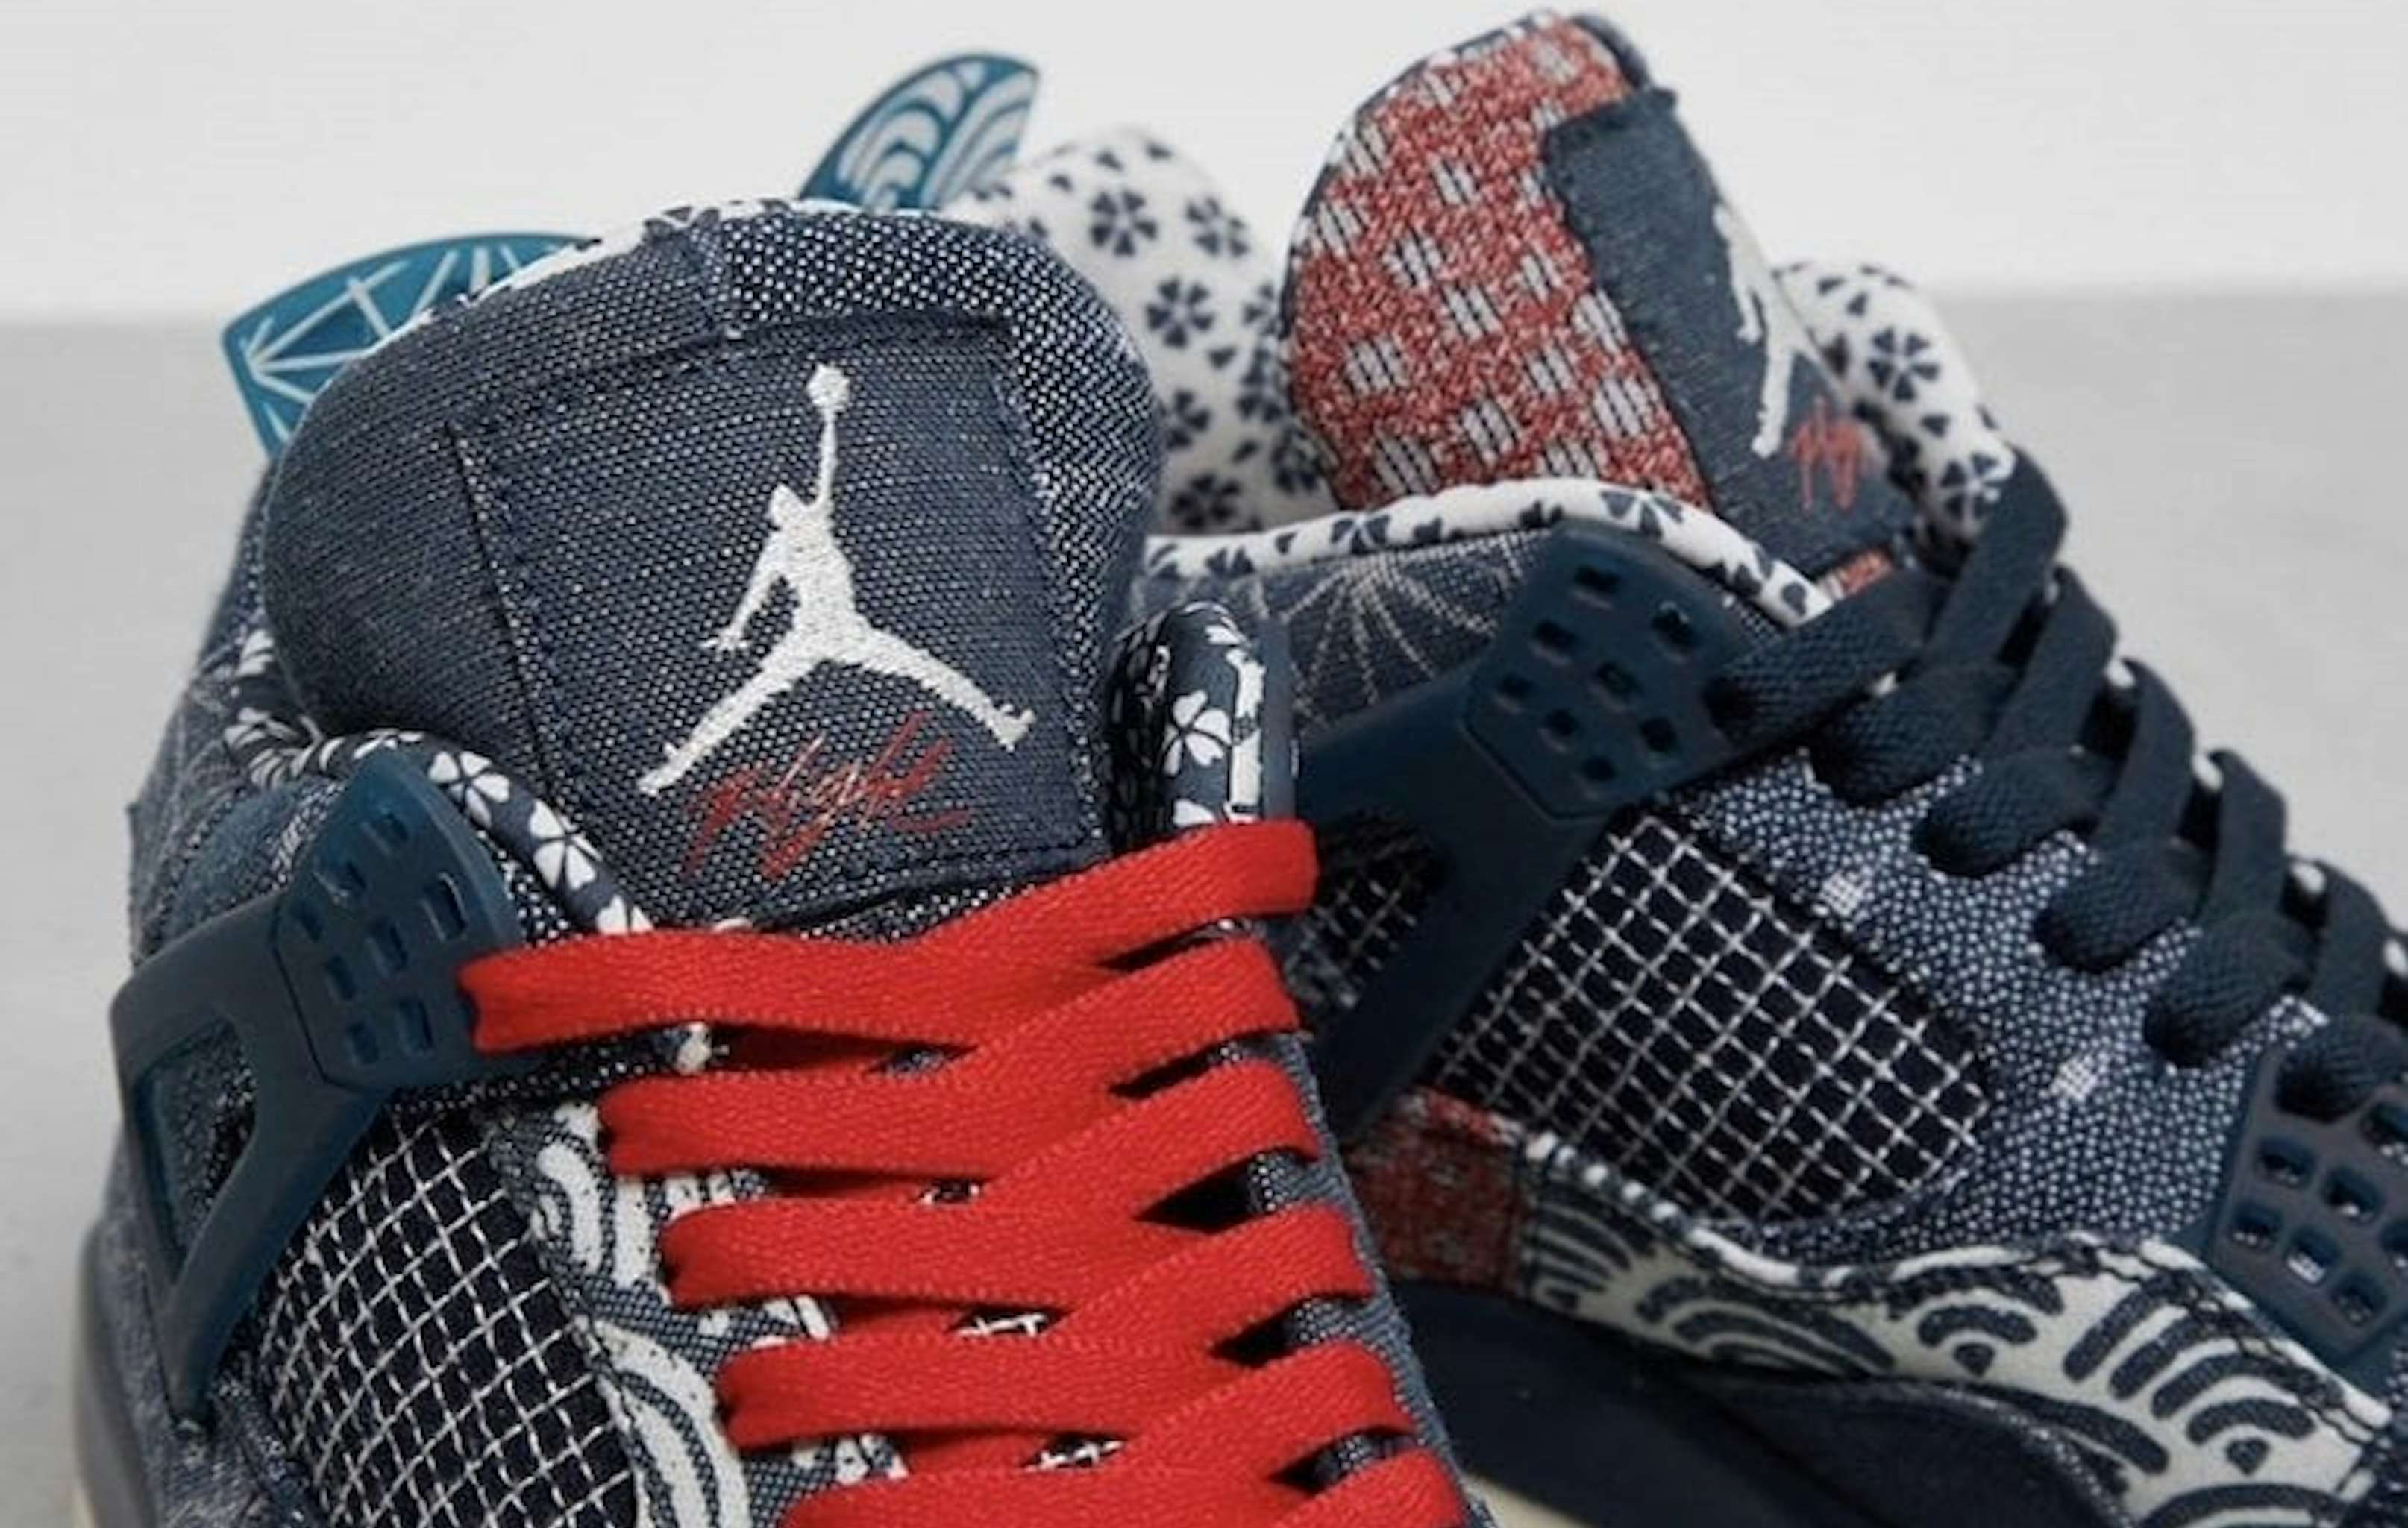 Jordan komt dit najaar met de Air Jordan 4 "Sashiko" | Sneaker Squad